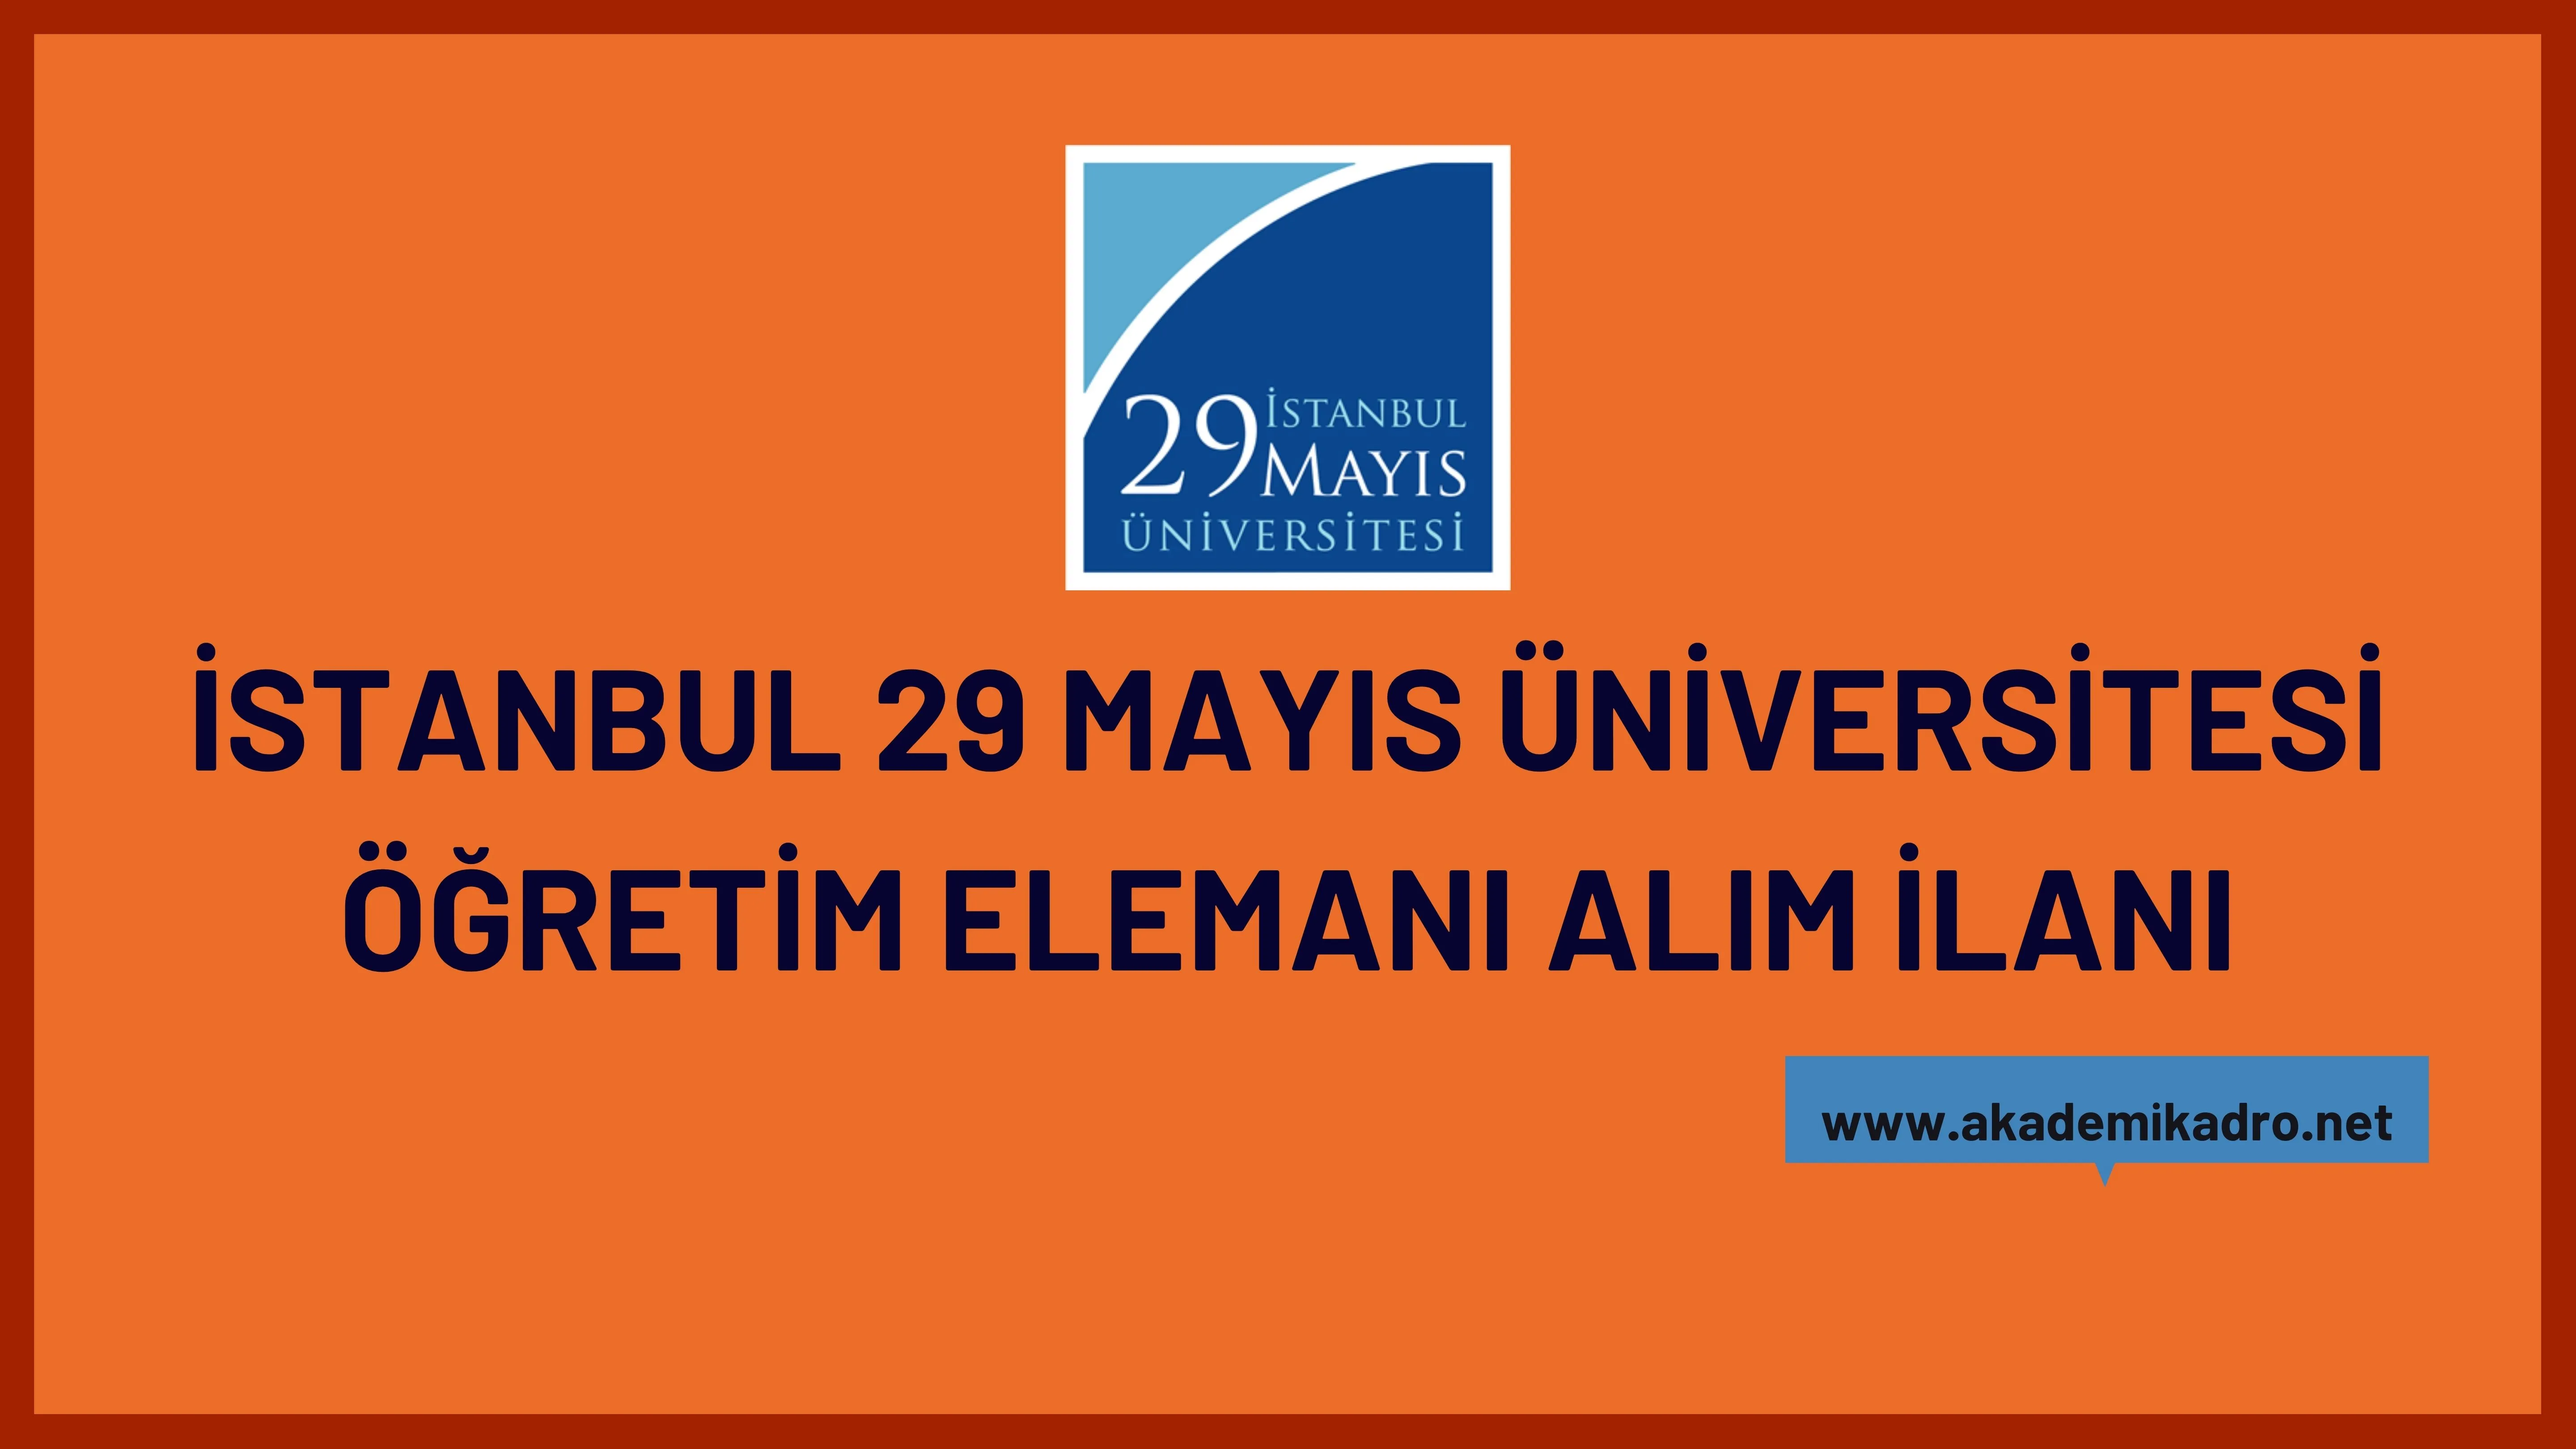 İstanbul 29 Mayıs Üniversitesi 3 Araştırma görevlisi ve 18 Öğretim üyesi alacak.